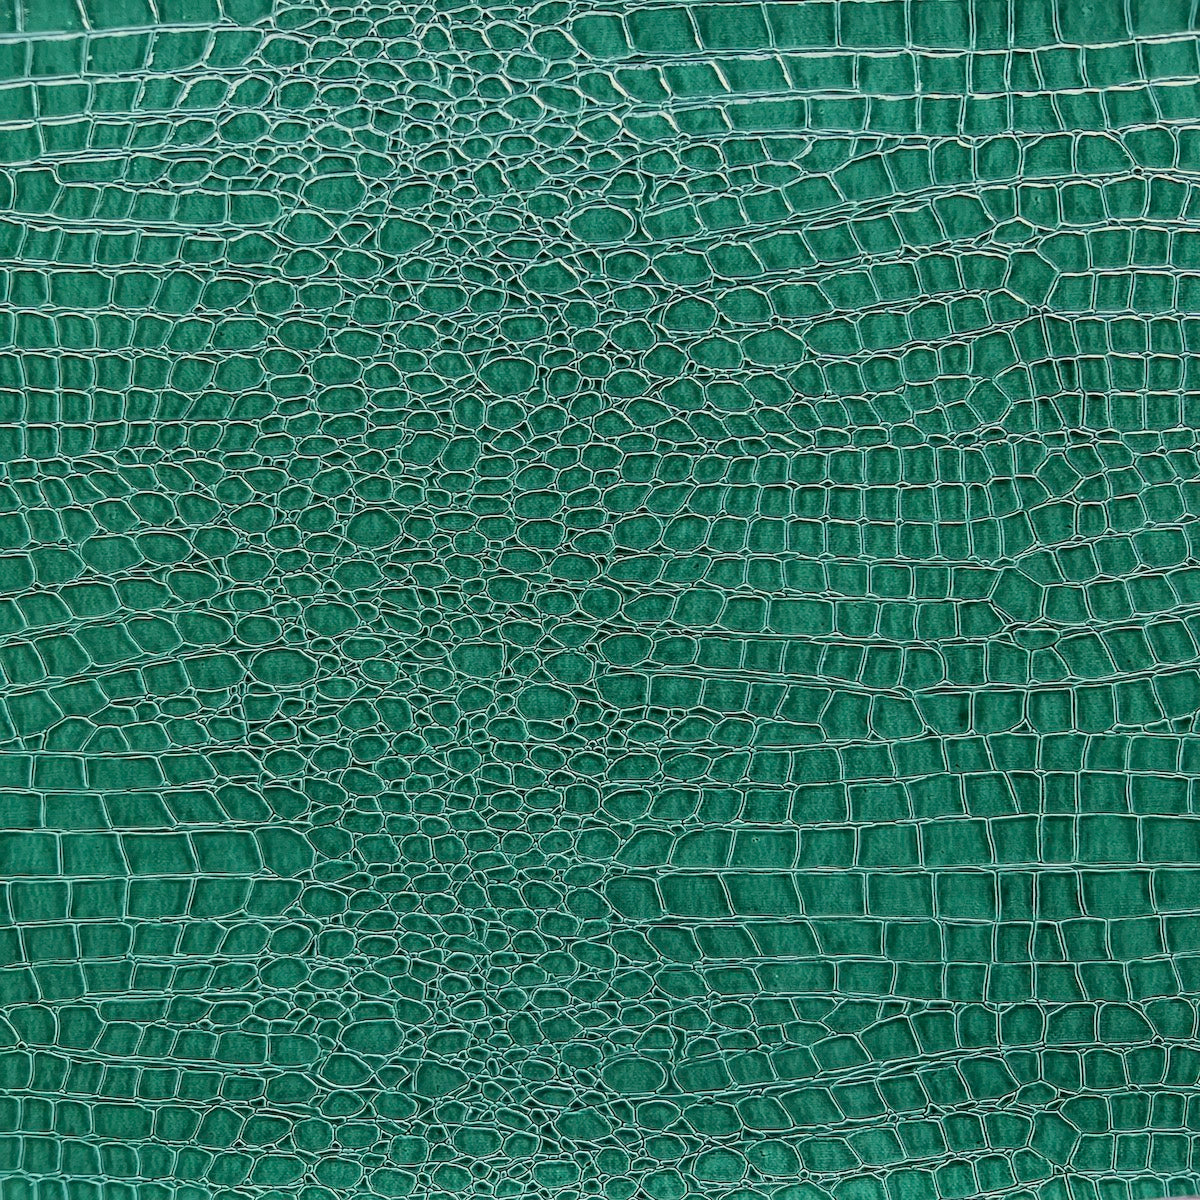 Tissu vinyle vert sarcelle avec des crocodiles 